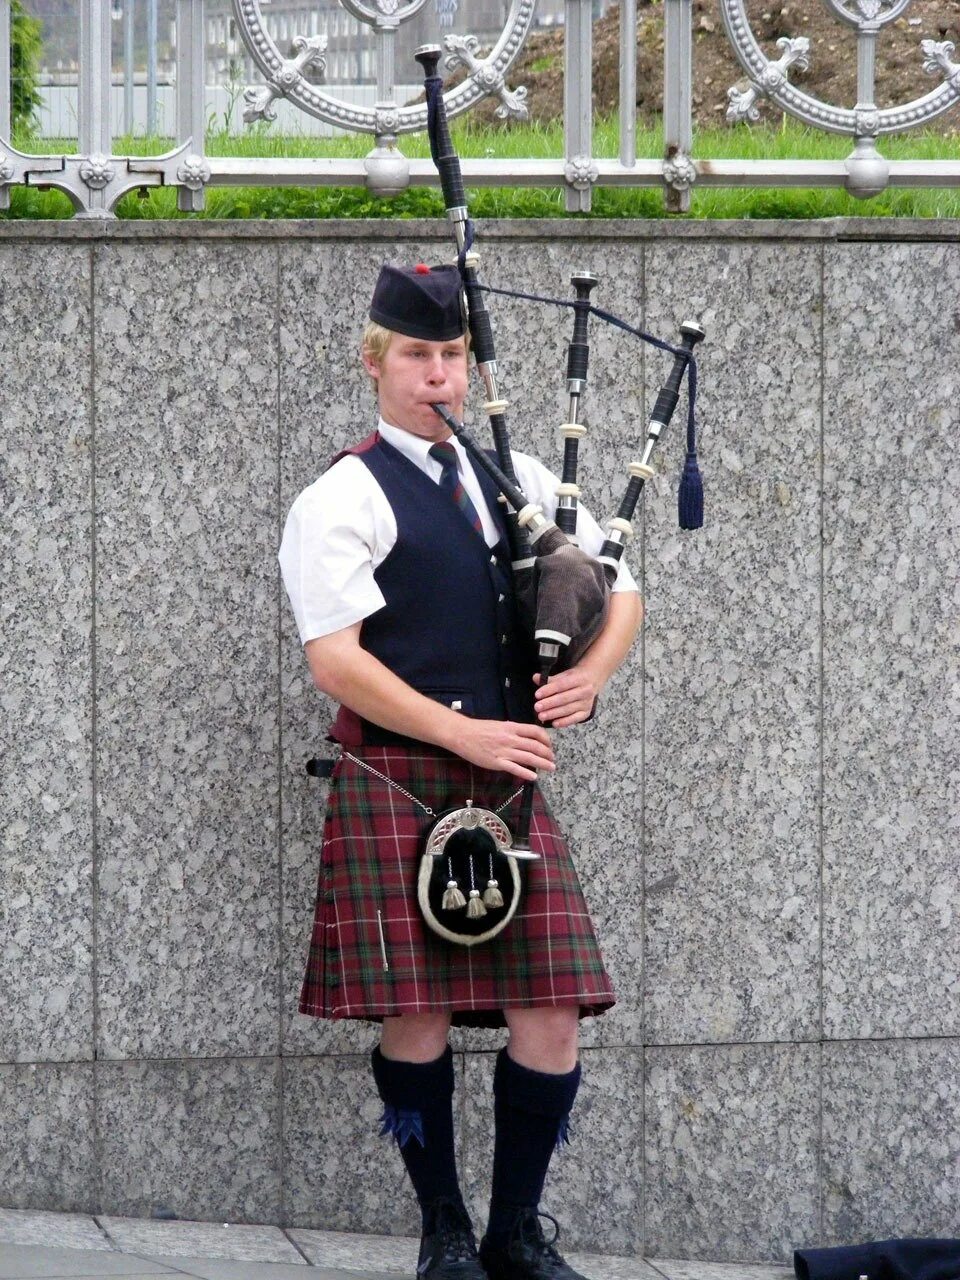 Шотландская волынка музыка. Волынщики Шотландии. Волынка в Шотландии. Шотландия музыкальный инструмент национальный волынка. Шотландский килт и волынка.